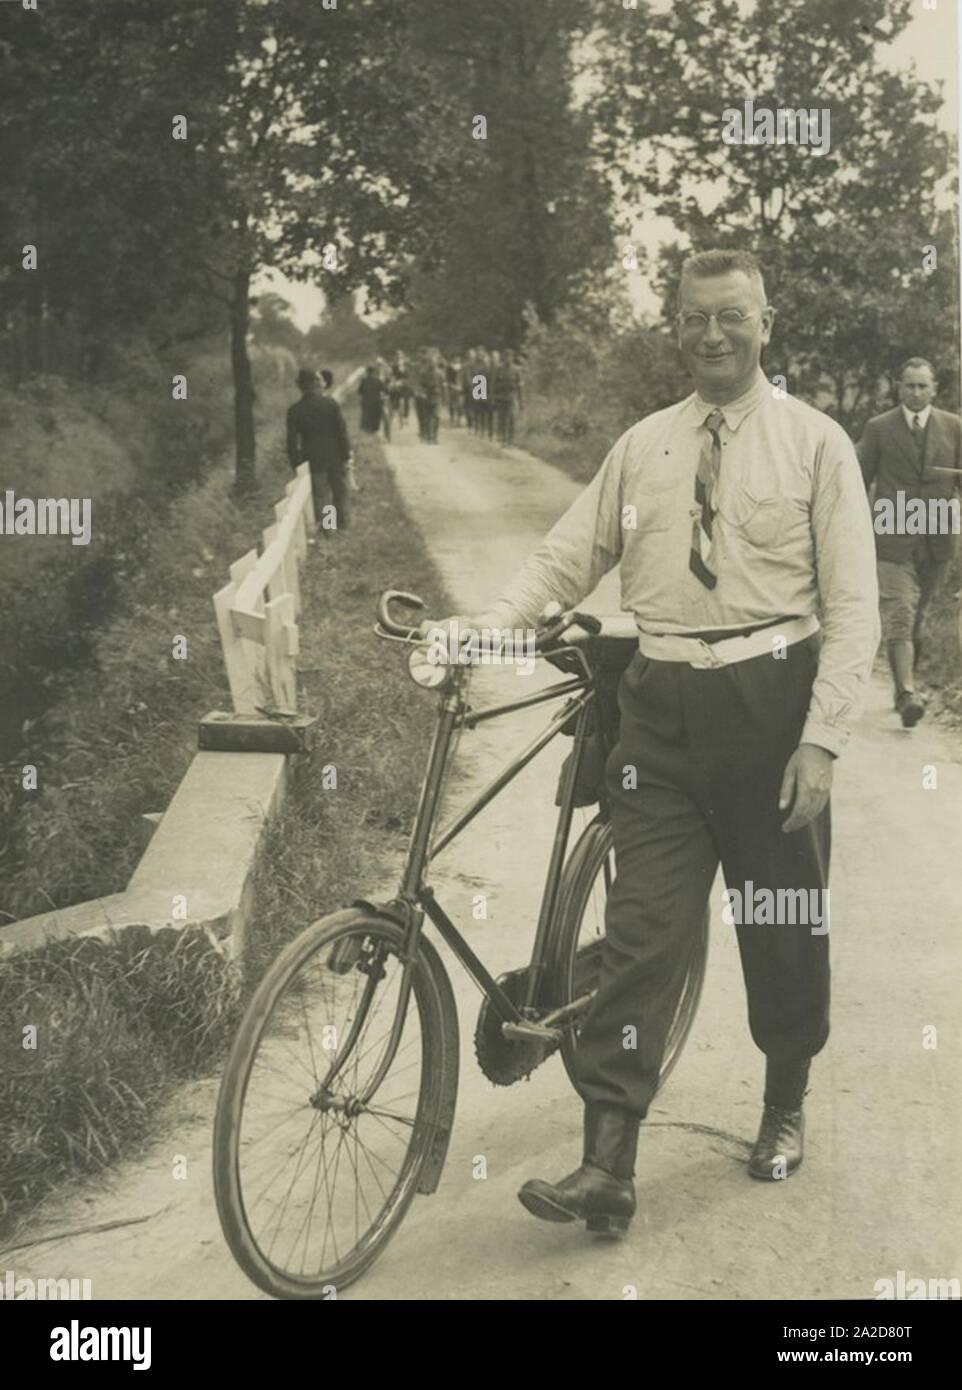 Een verzorger met zijn fiets gaat te voet tijdens de 20e vierdaagse. – Stock Photo